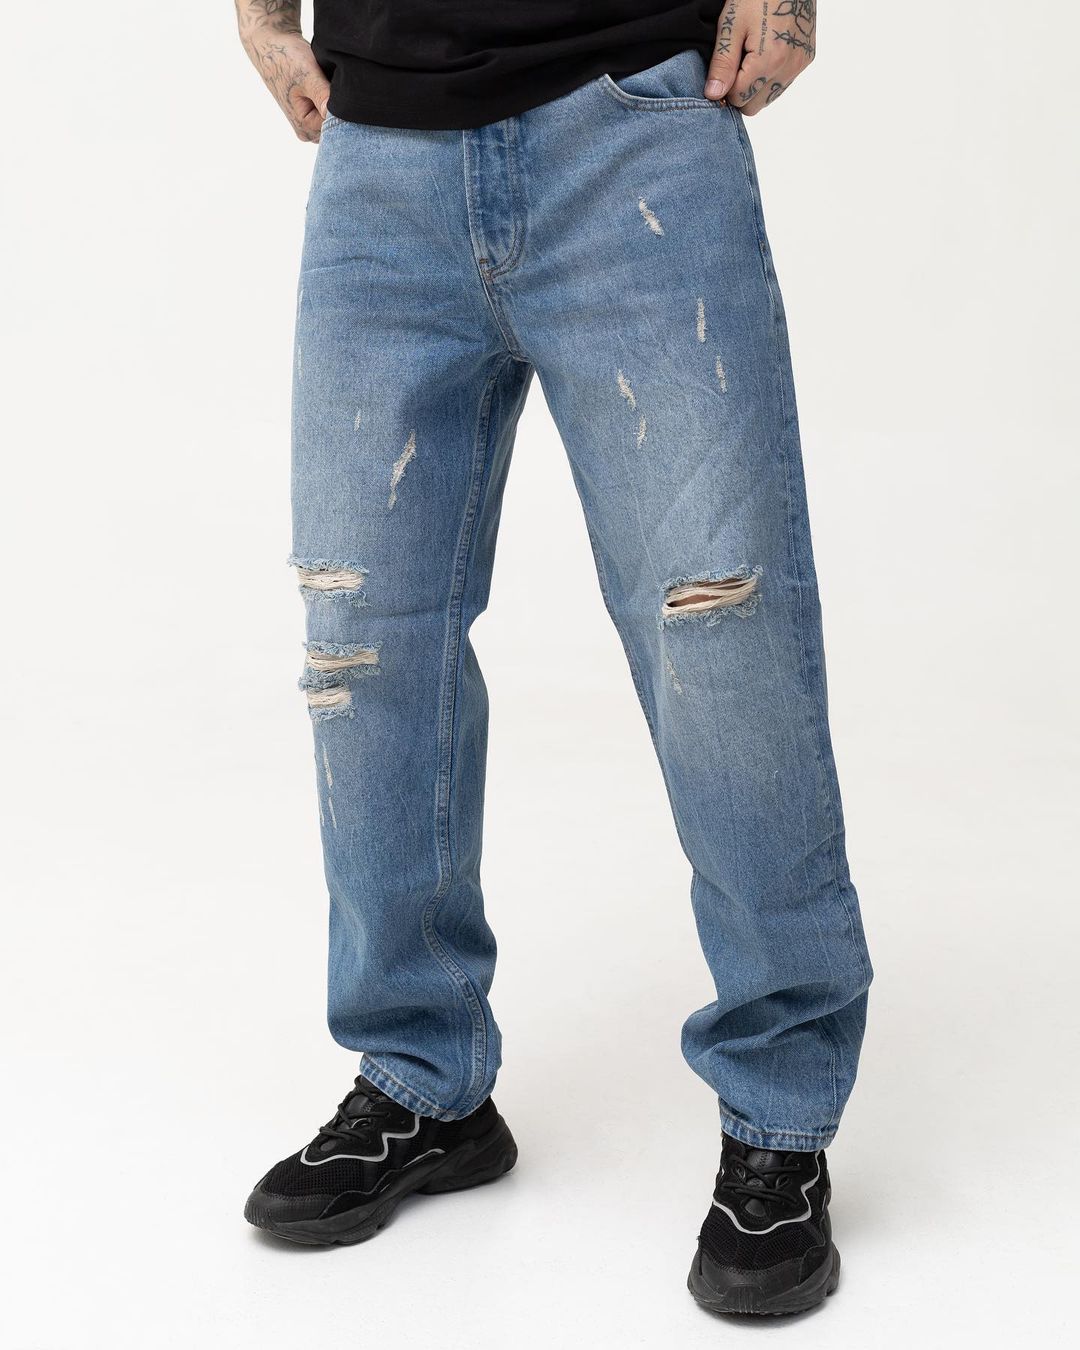 Чоловічі сині джинси BEZET базові з перфорацією - Фото 3